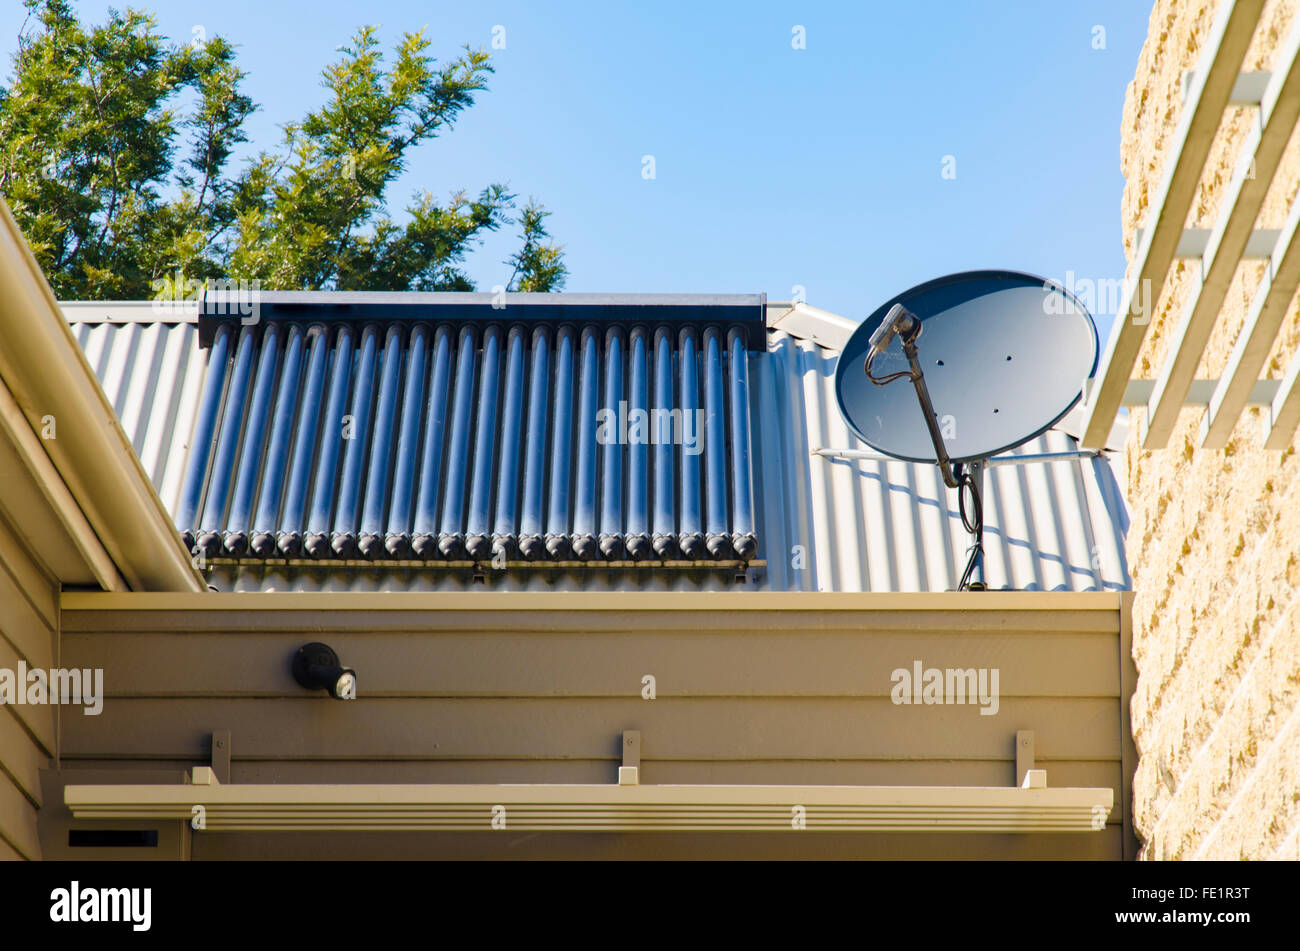 Pannelli solari ad acqua calda e parabola satellitare su un tetto in acciaio in Australia Foto Stock